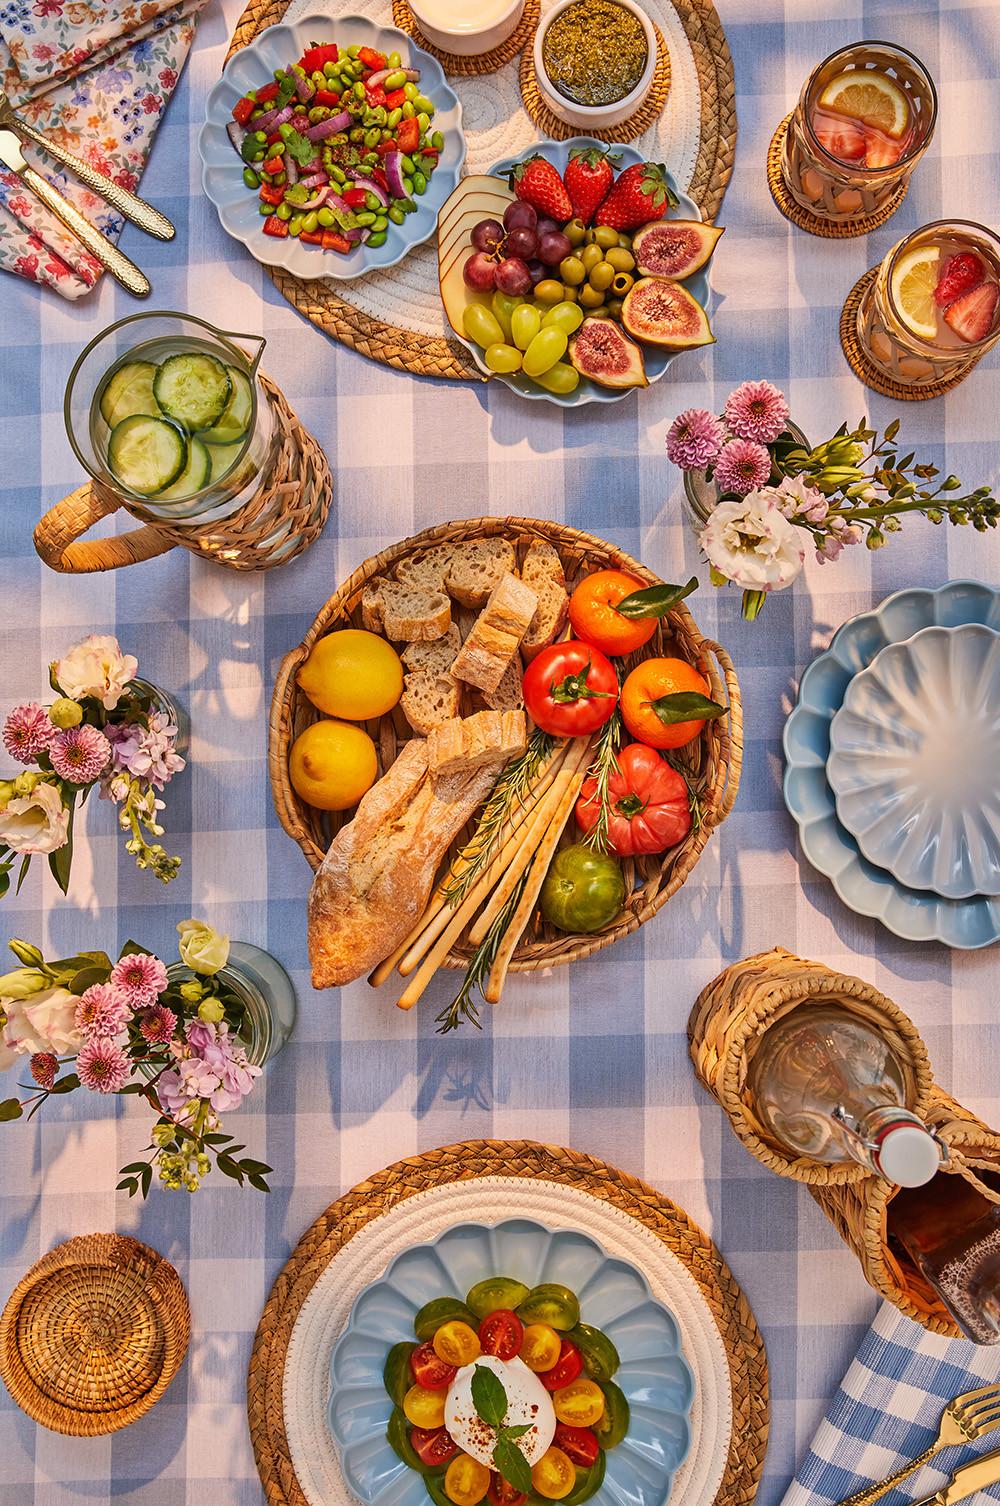 Présentation de table avec nappe à motif vichy bleu, assiettes et paniers remplis de nourriture